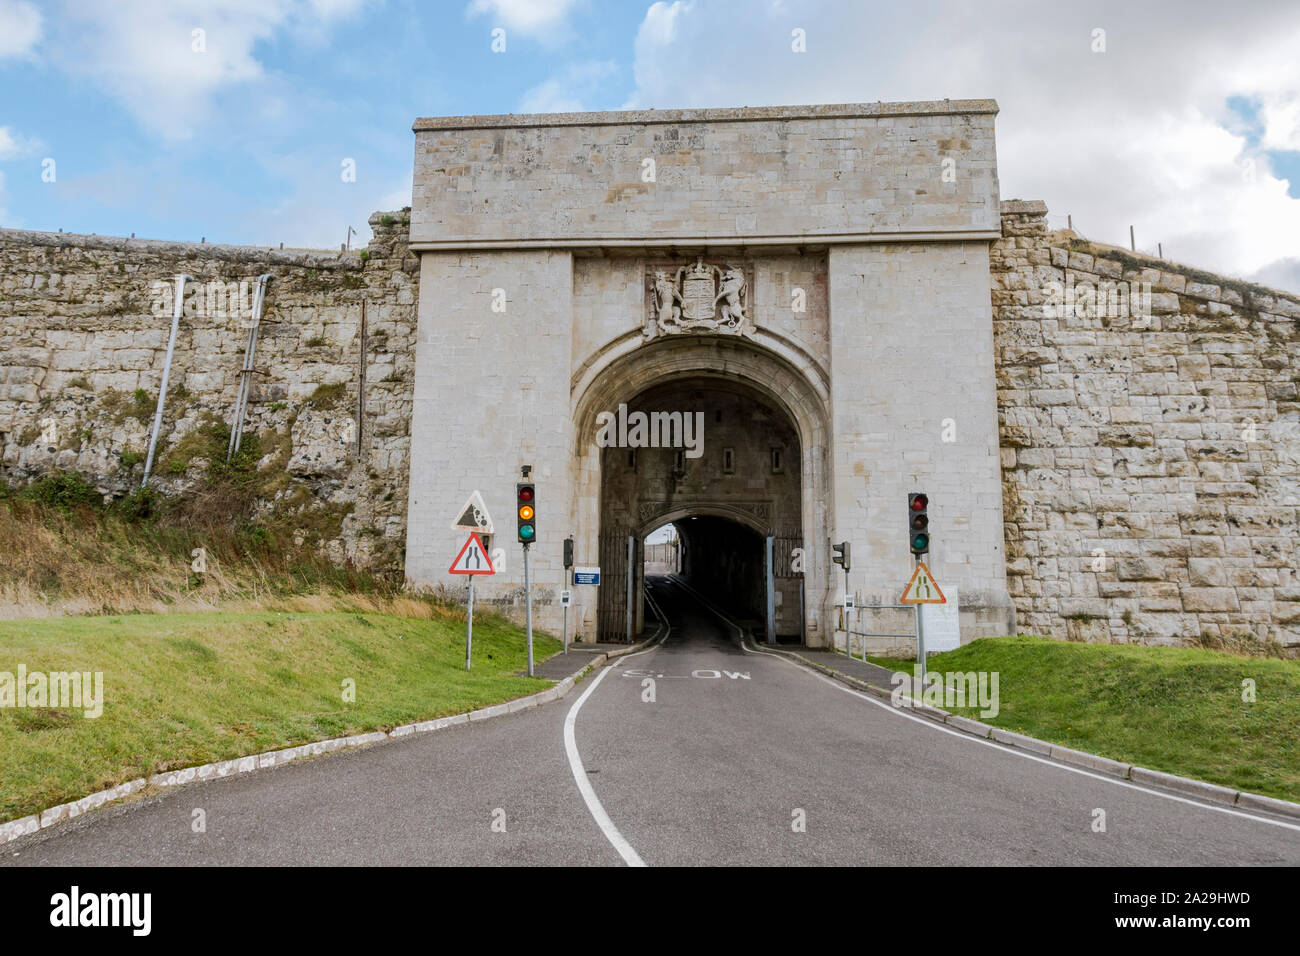 Das Eingangstor zu HMP die Verne Gefängnis auf der Isle of Portland in Dorset, Verne Gefängnis, England. Stockfoto